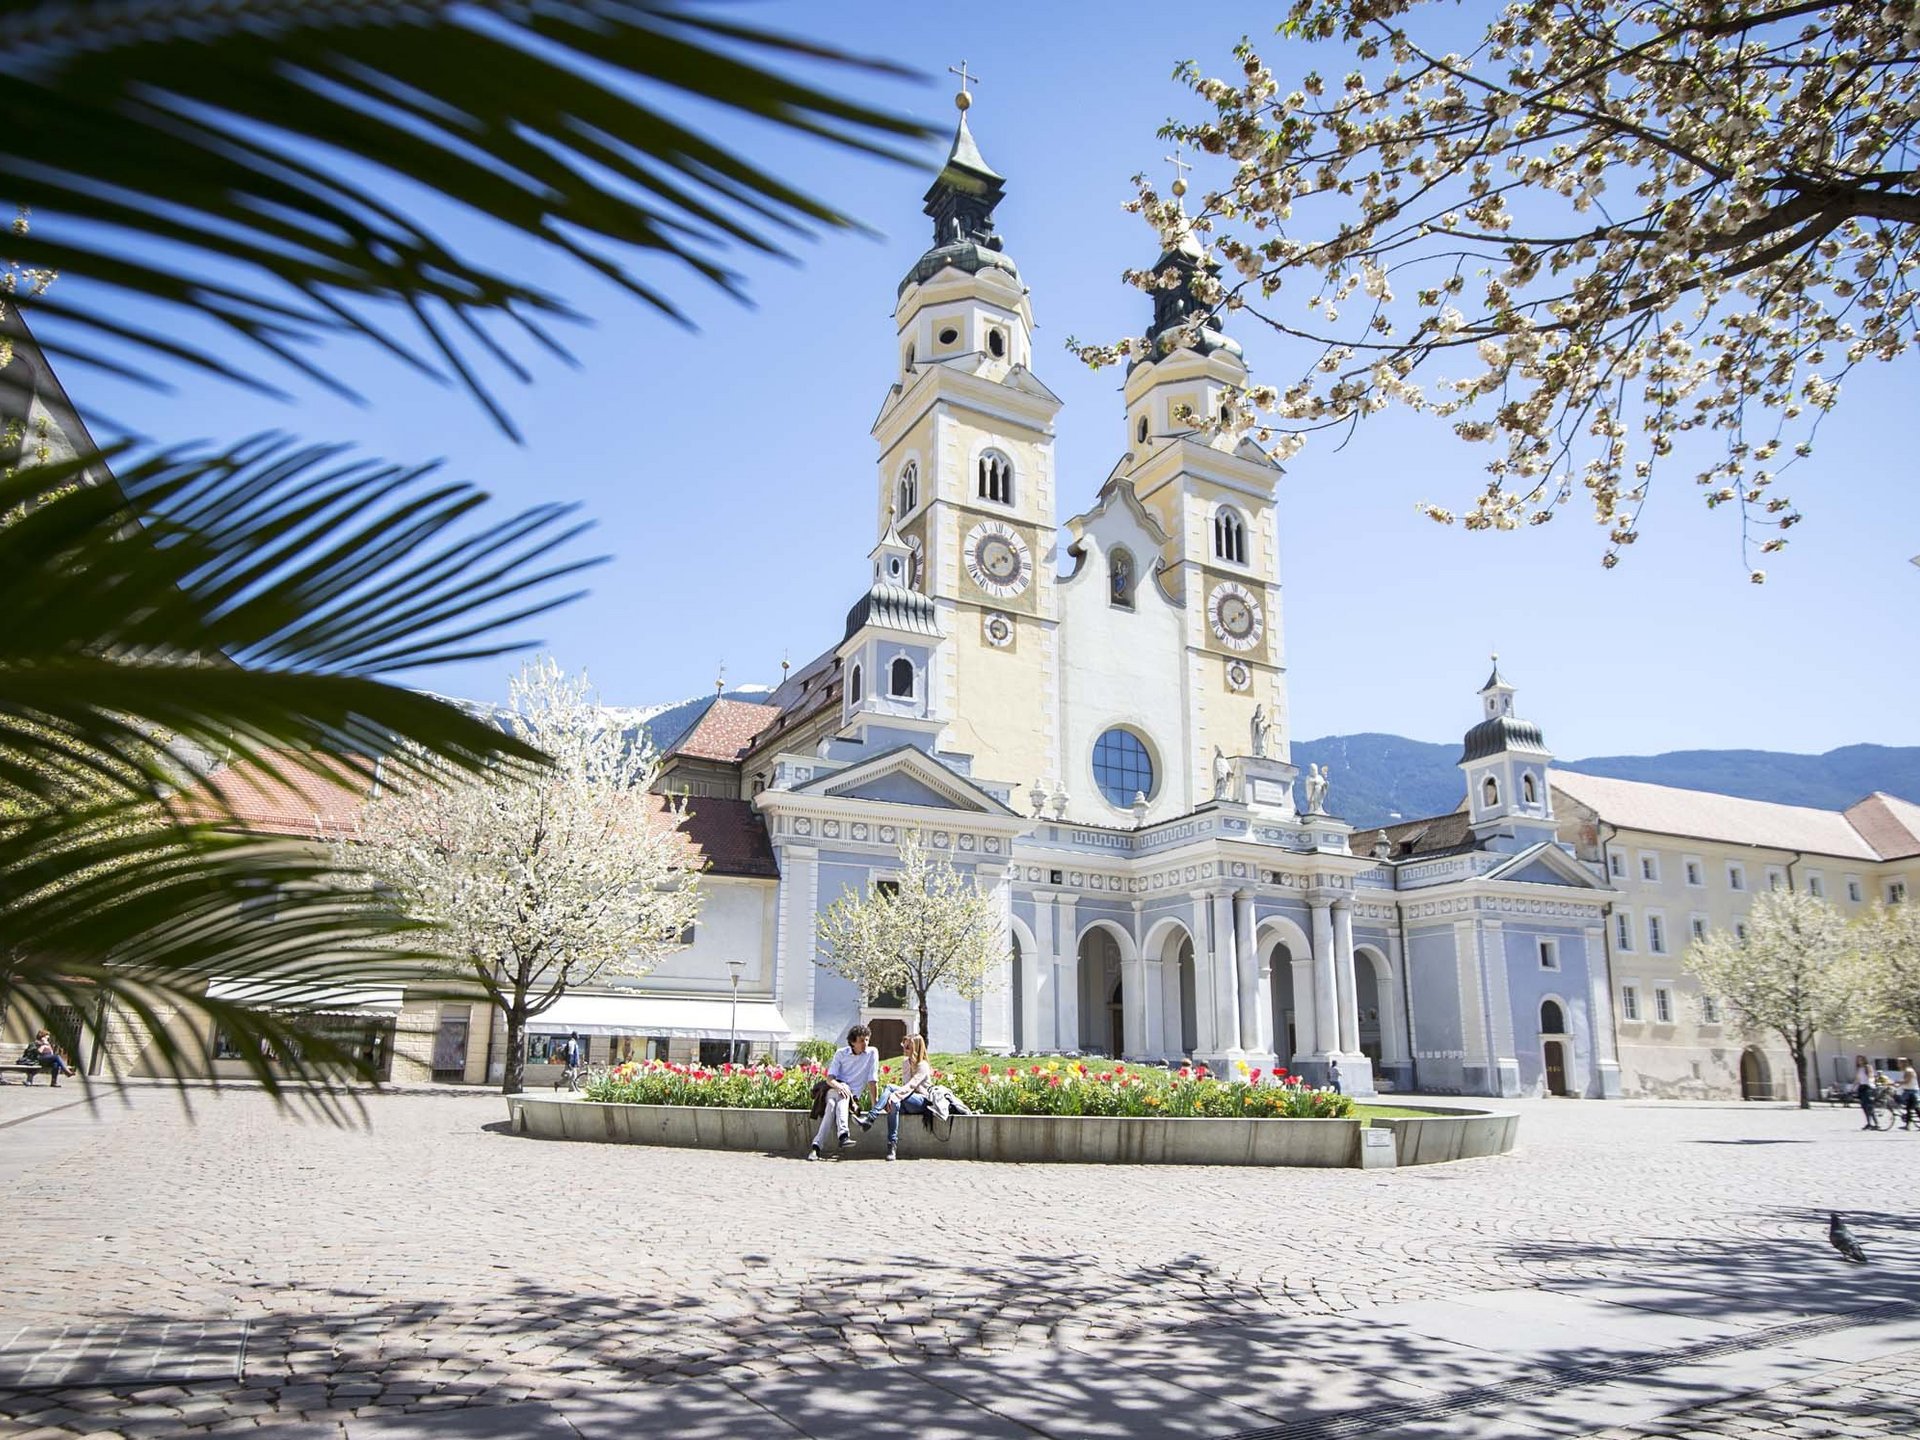 Ferienwohnungen in Brixen – Ihre beste Wahl!